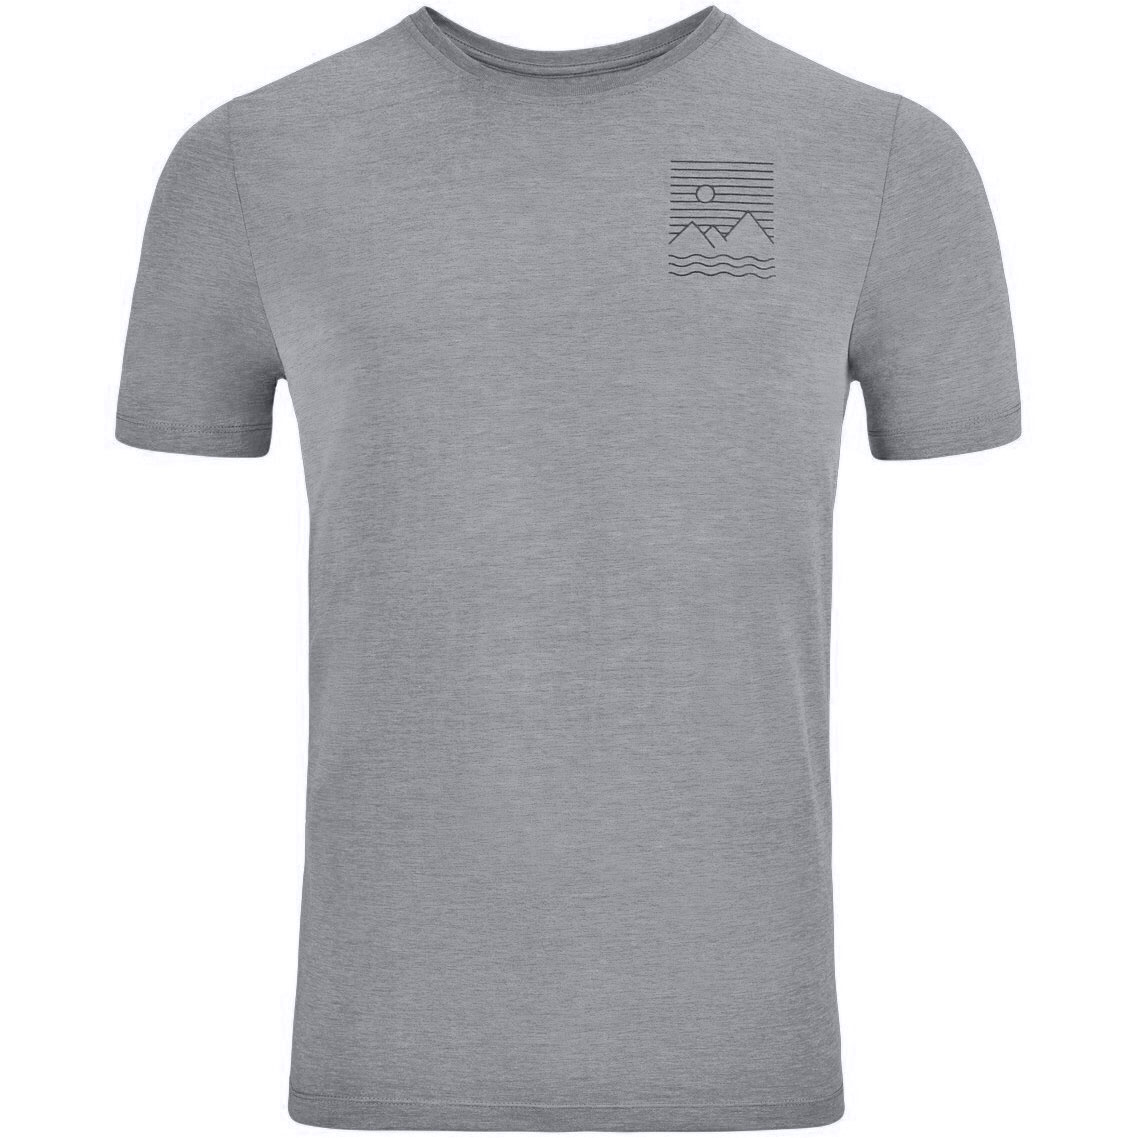 Picture of Odlo Ascent 365 Linear T-Shirt Men - grey melange